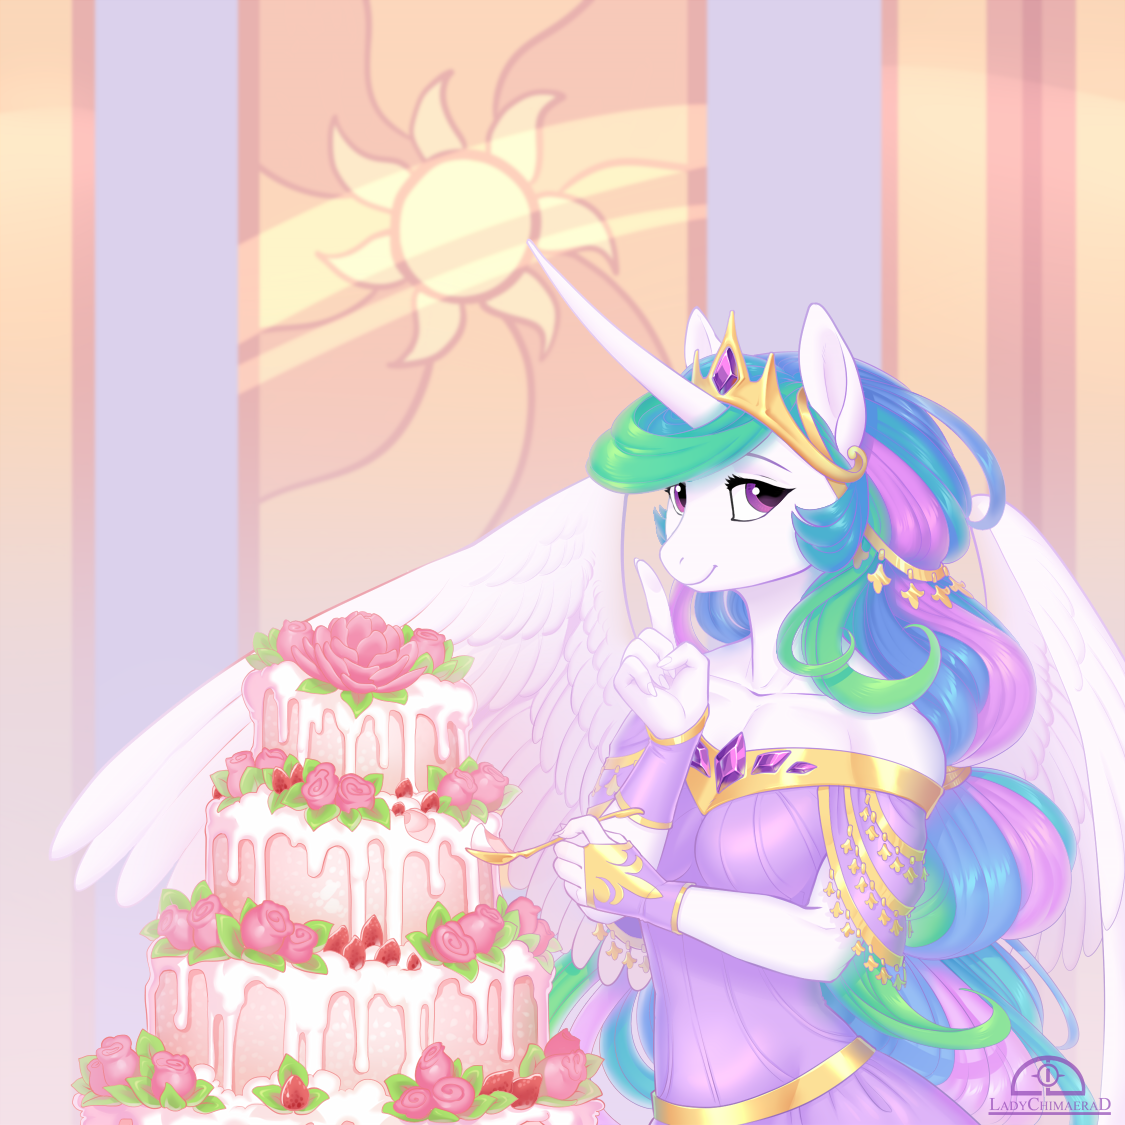 Cake princess - My little pony, Princess celestia, Anthro, Cake, Ladychimaera, PonyArt